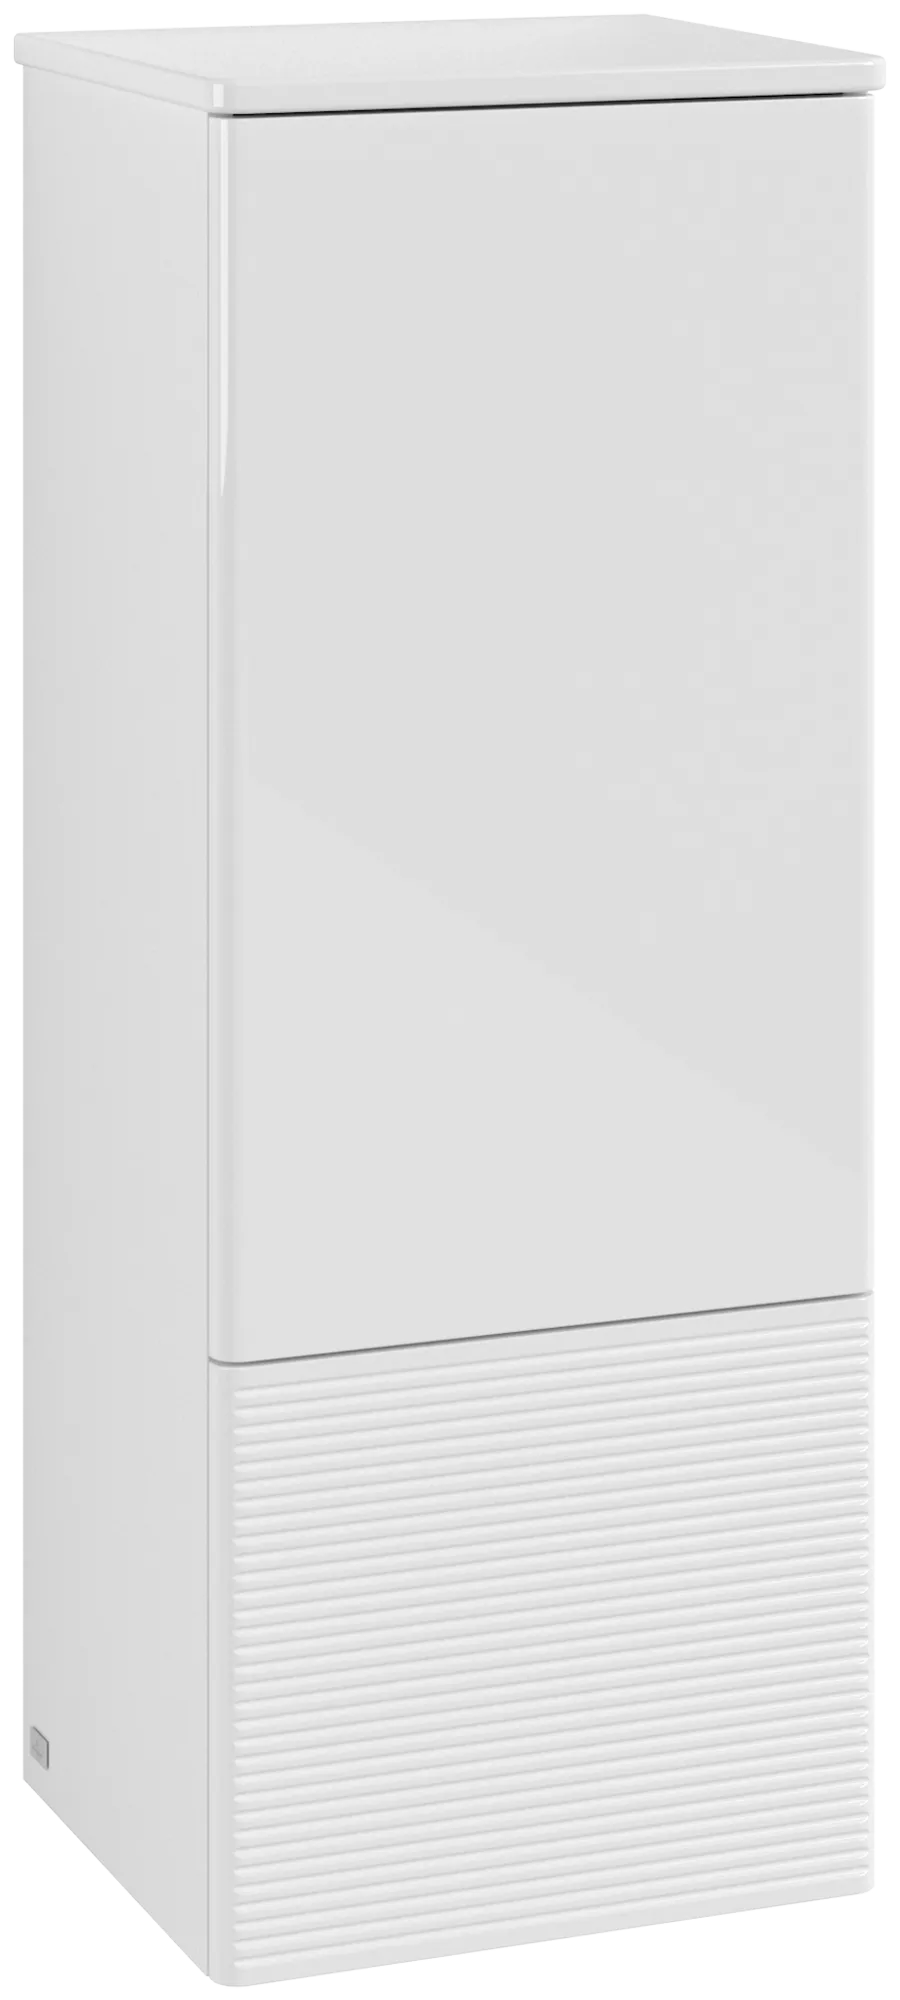 VILLEROY BOCH Antao Medium-height cabinet, with lighting, 1 door, 414 x 1039 x 356 mm, Front with grain texture, Glossy White Lacquer / Glossy White Lacquer #L44100GF resmi